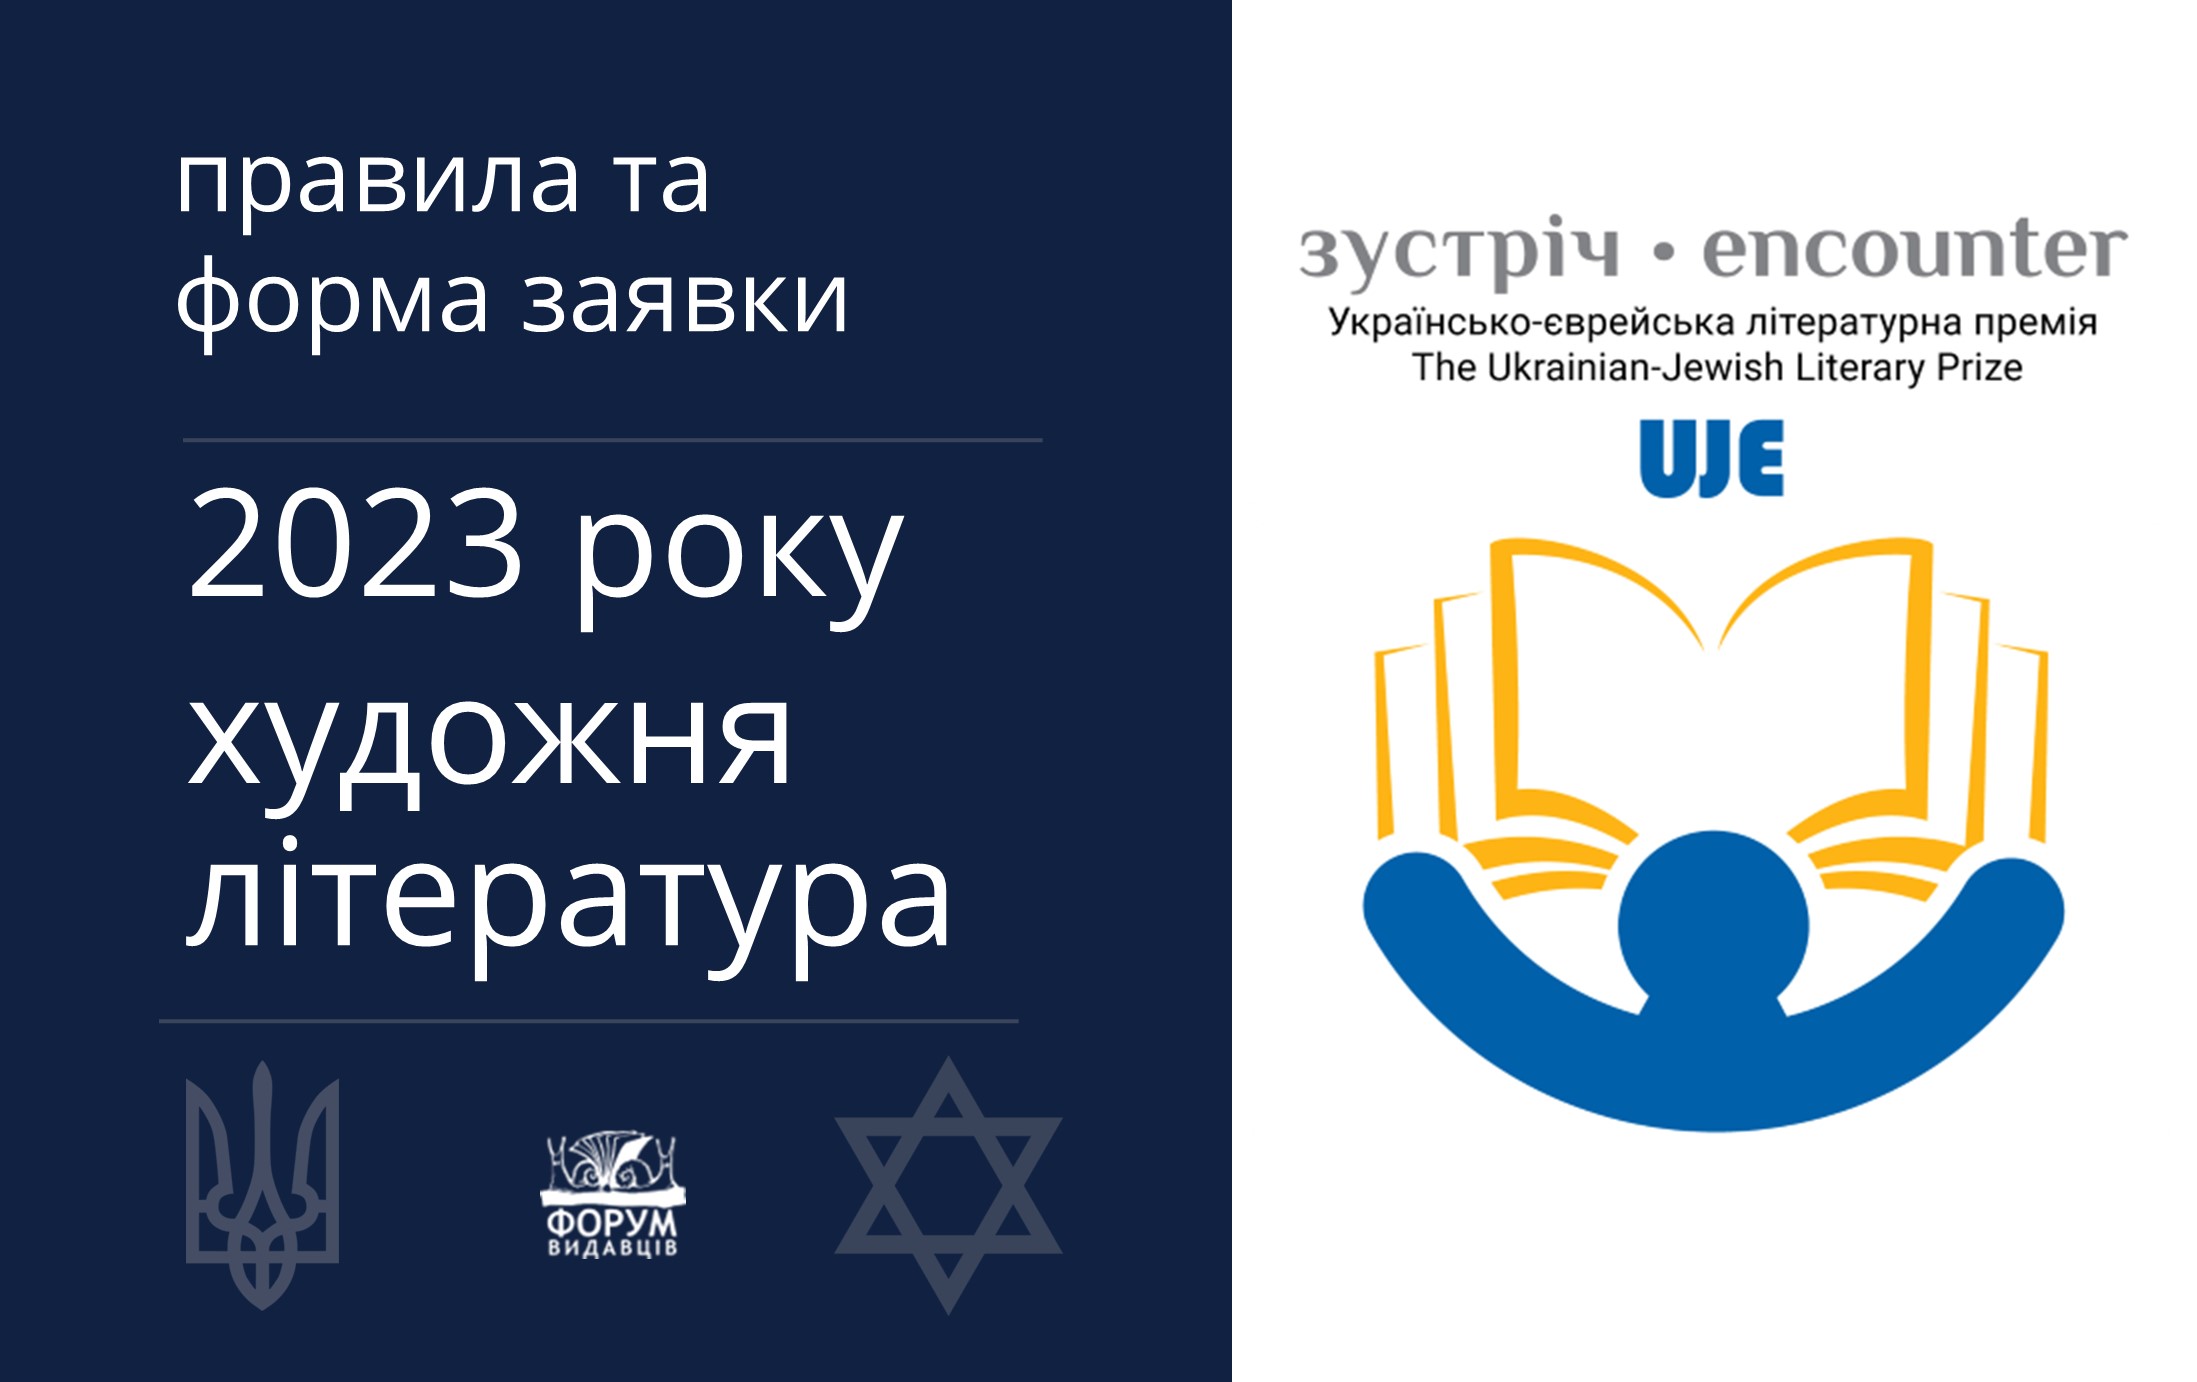 Нагадуємо, що триває прийом заявок на Премію «Зустріч: Українсько-єврейська літературна премія»™ 2023 р. Художня література